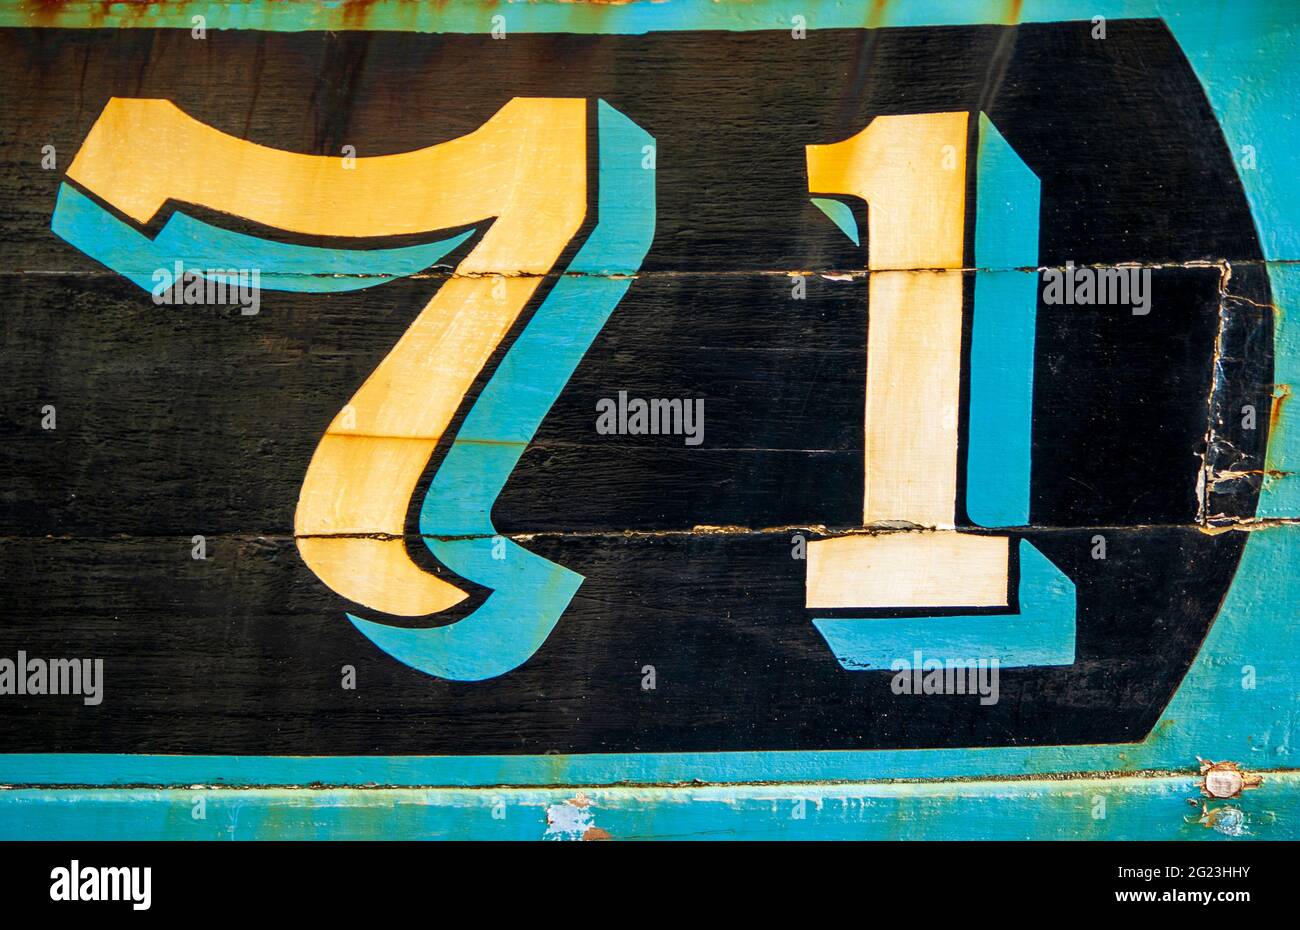 Die verwitterte Nummer 71 ist auf der Seite eines alten Fischerbootes gemalt, das am Girvan Harbour in South Ayrshire, Schottland, festgemacht ist. Stockfoto